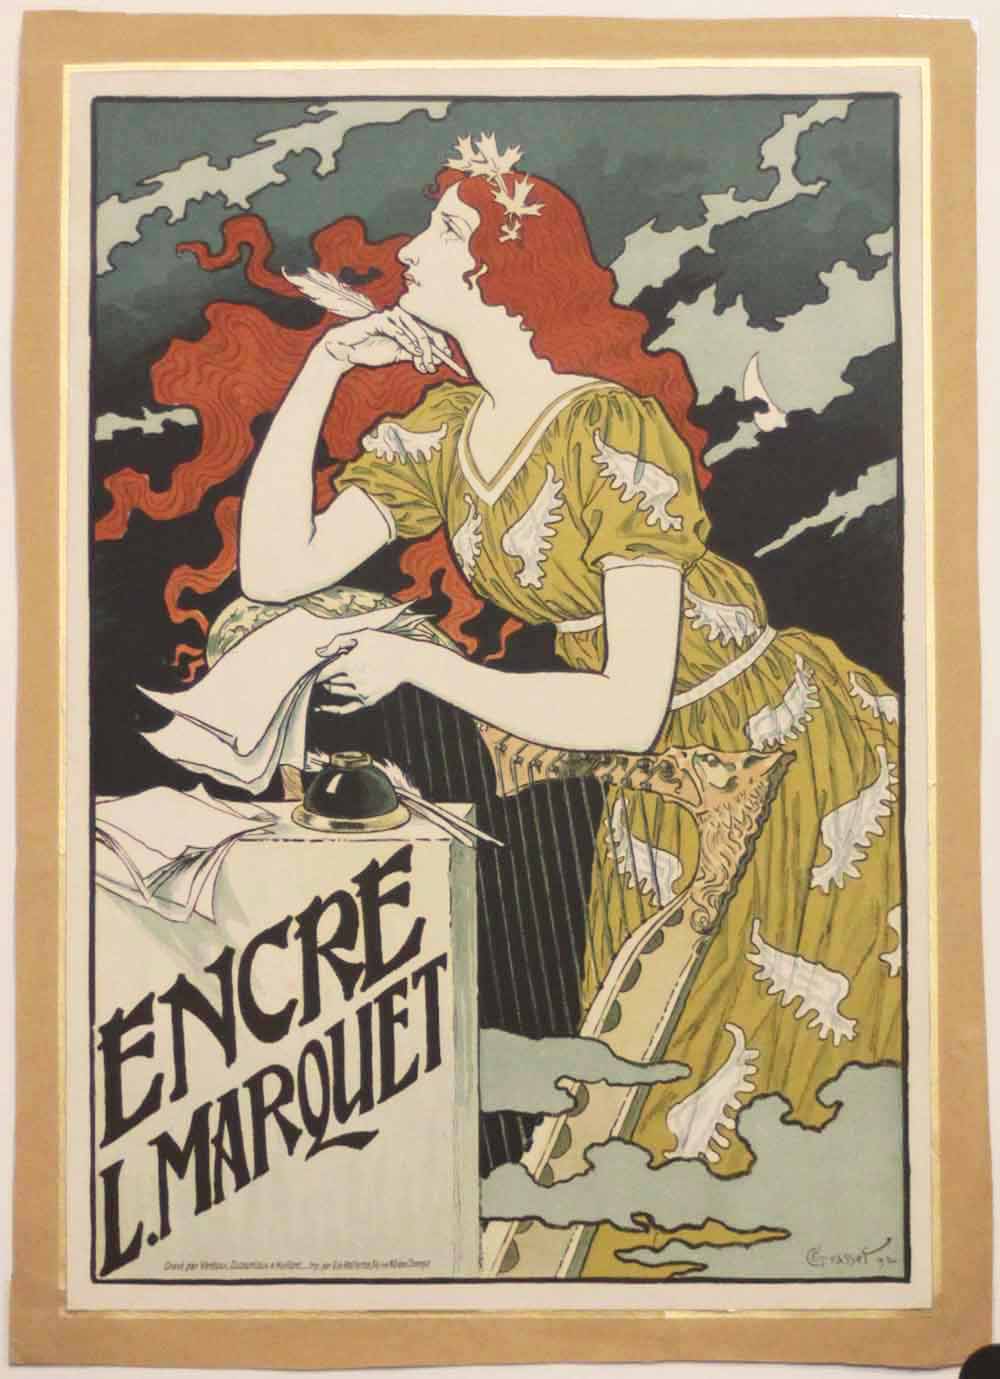 Affichette d'intérieur. Encre Marquet, La meilleure de toutes les encres. 1892.